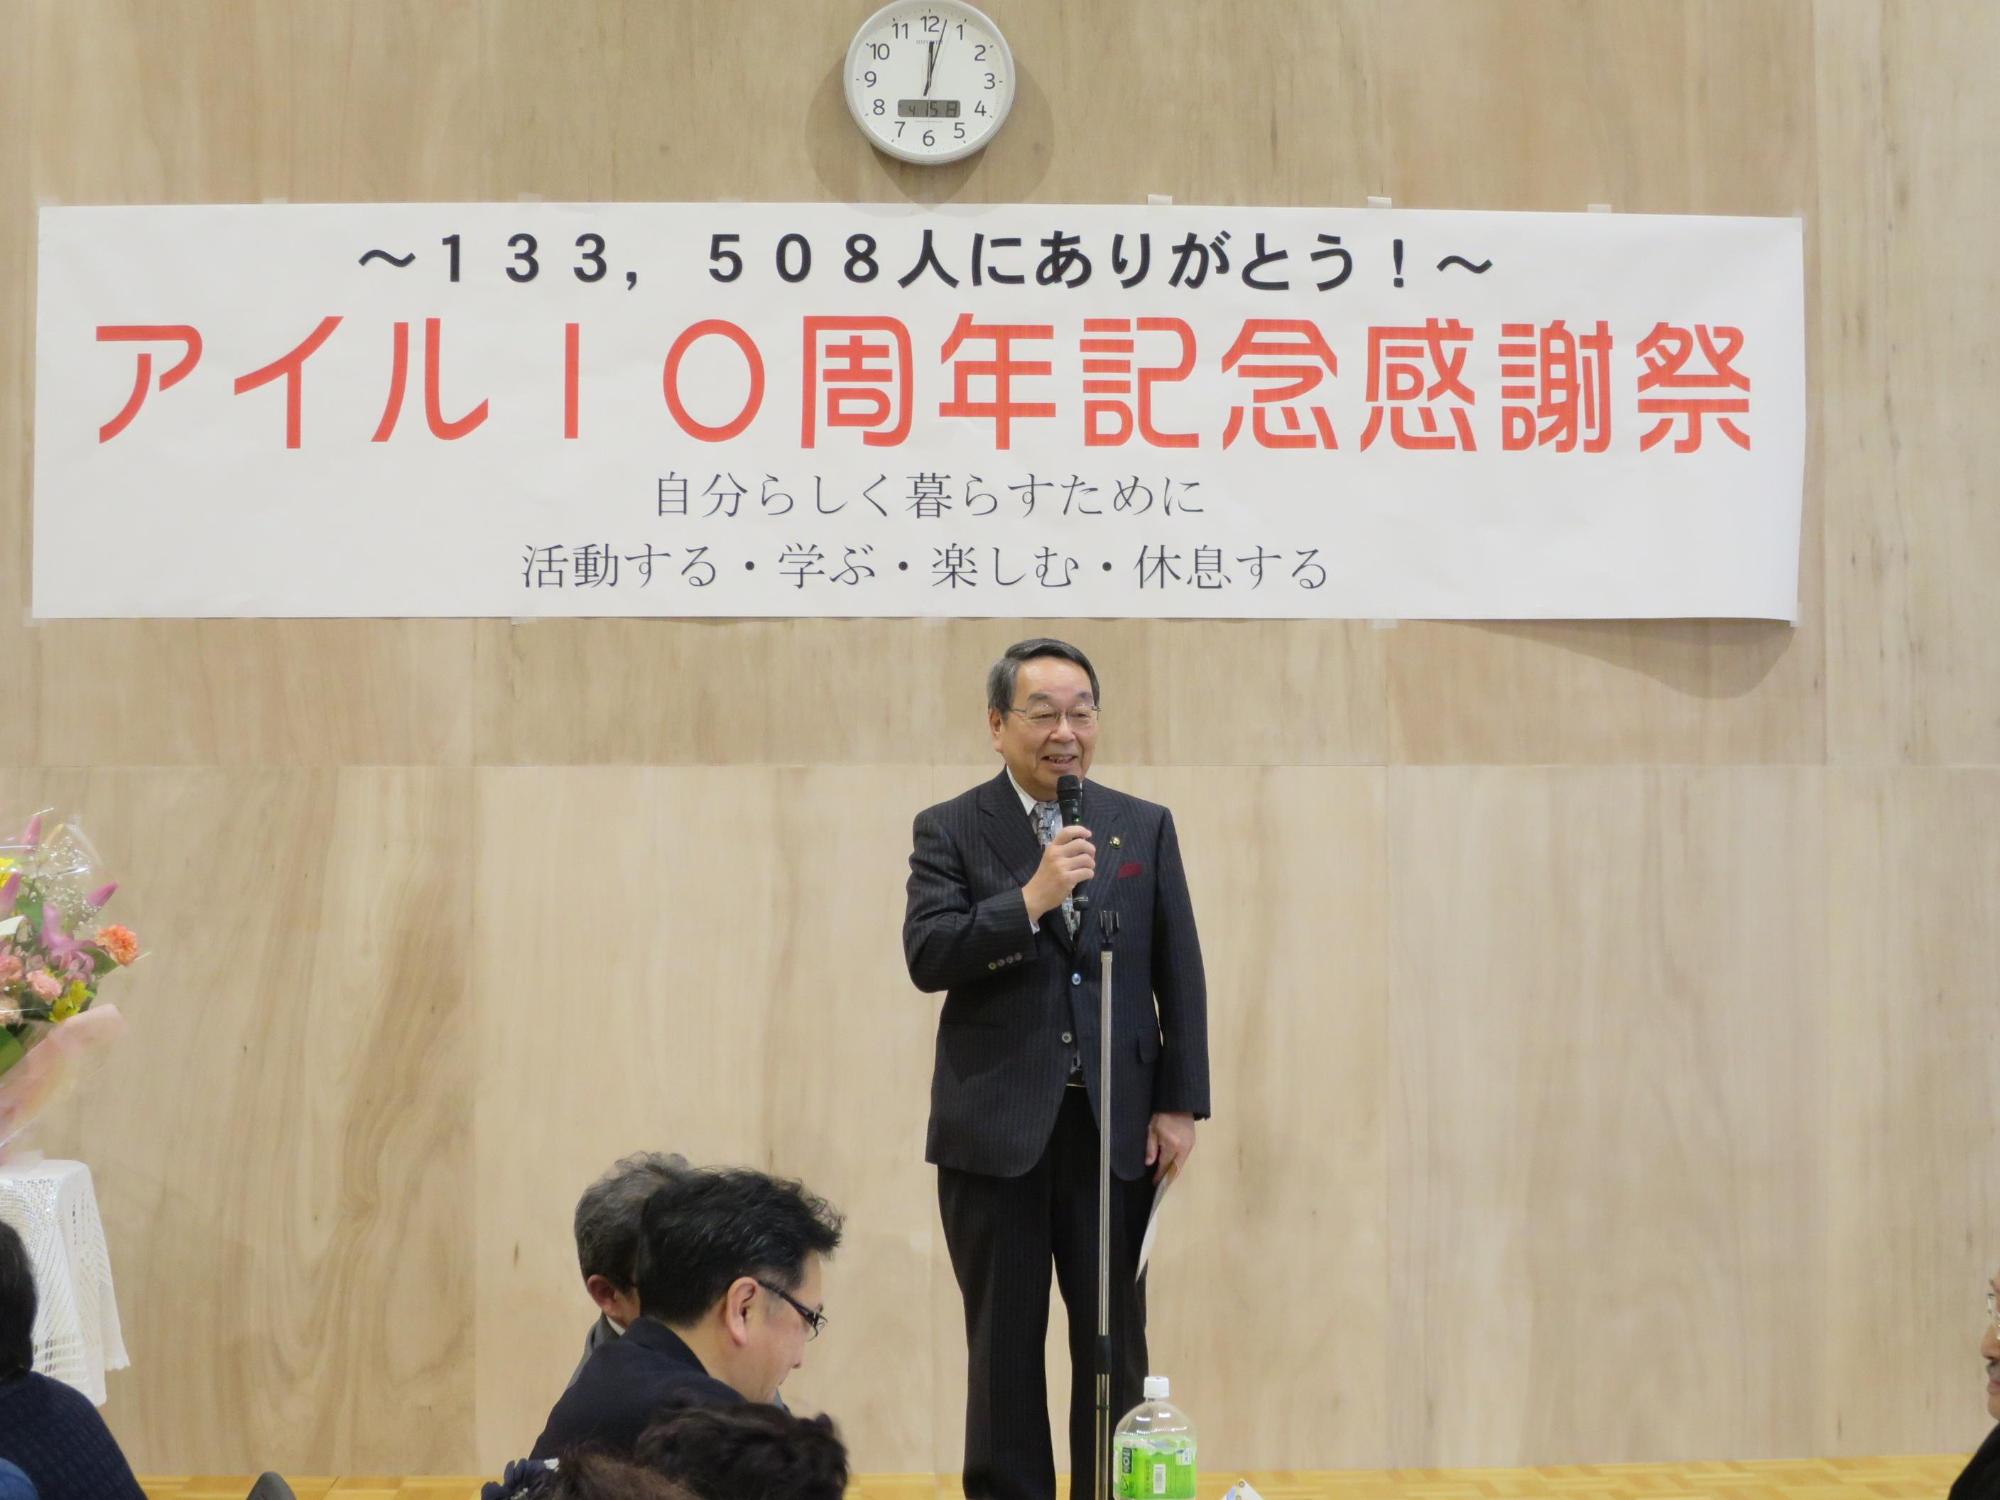 「えにわ市民プラザ・アイル10周年記念感謝祭」にて挨拶をしている原田市長の写真